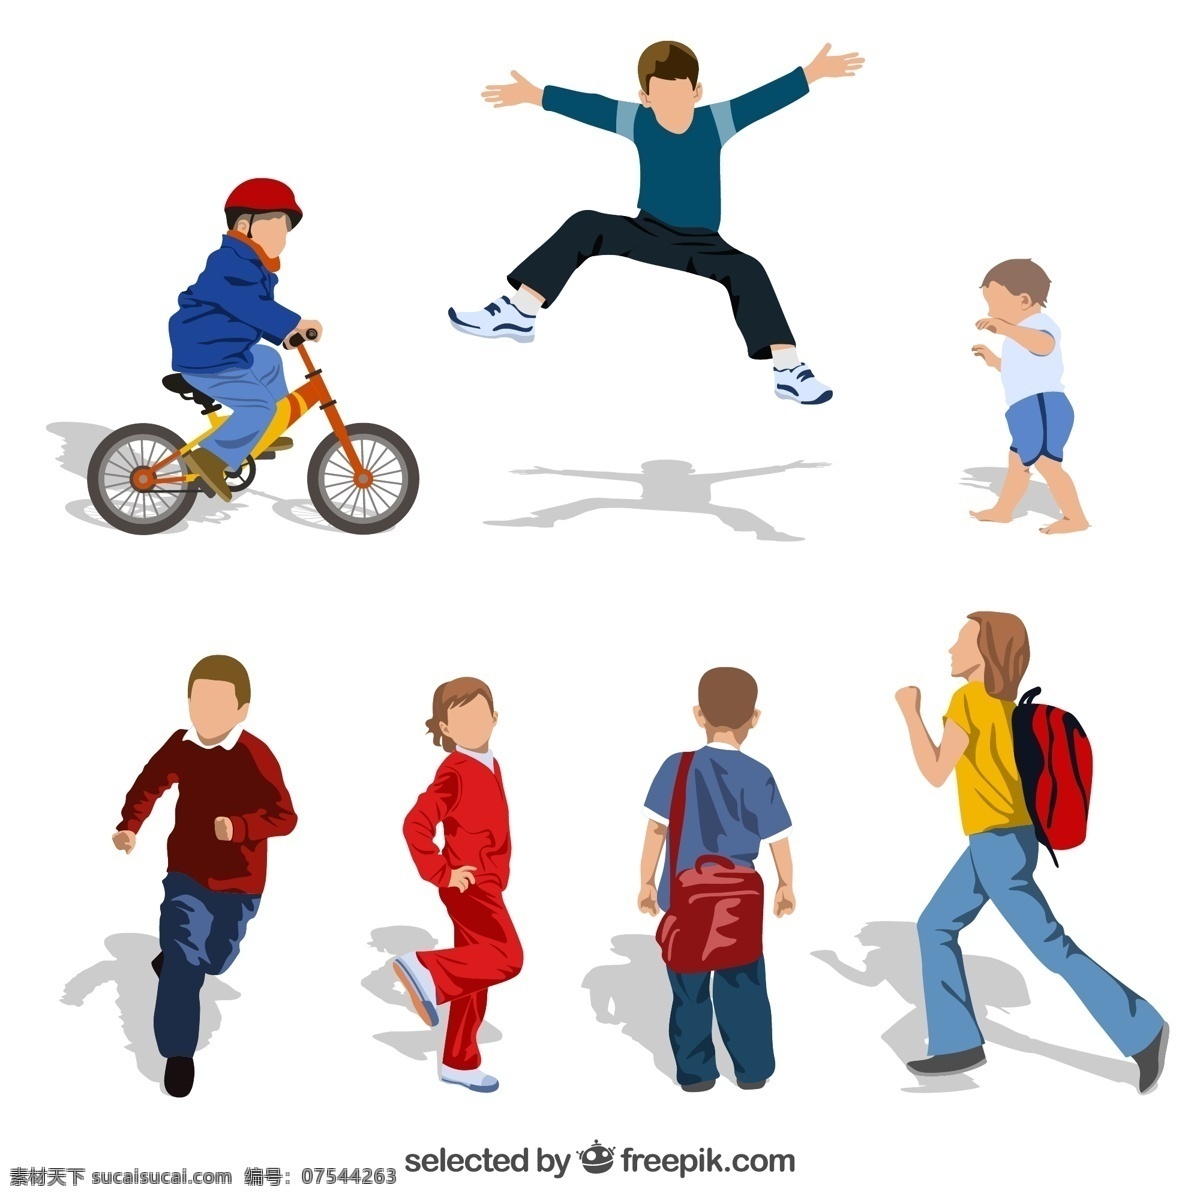 卡通少年 矢量素材 奔跑 上学 少年 孩子 男孩 单车 跳跃 女孩 学生 学校 教育 文化 ai格式 人物 人物图库 儿童幼儿